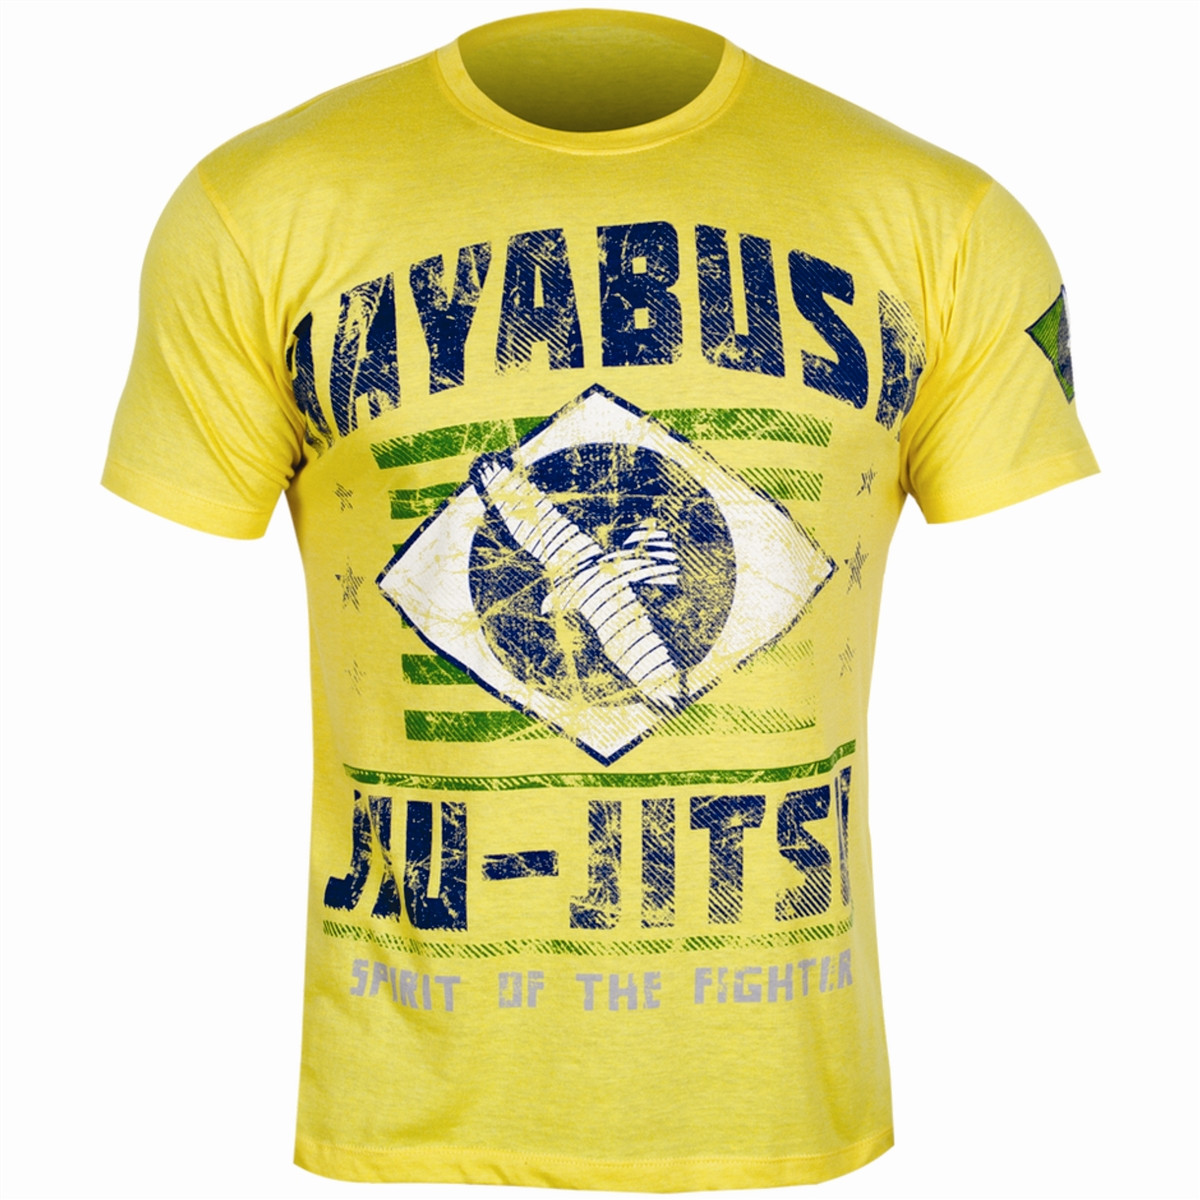 Hayabusa Jiu Jitsu Oss T-Shirt Yellow - The Jiu Jitsu Shop